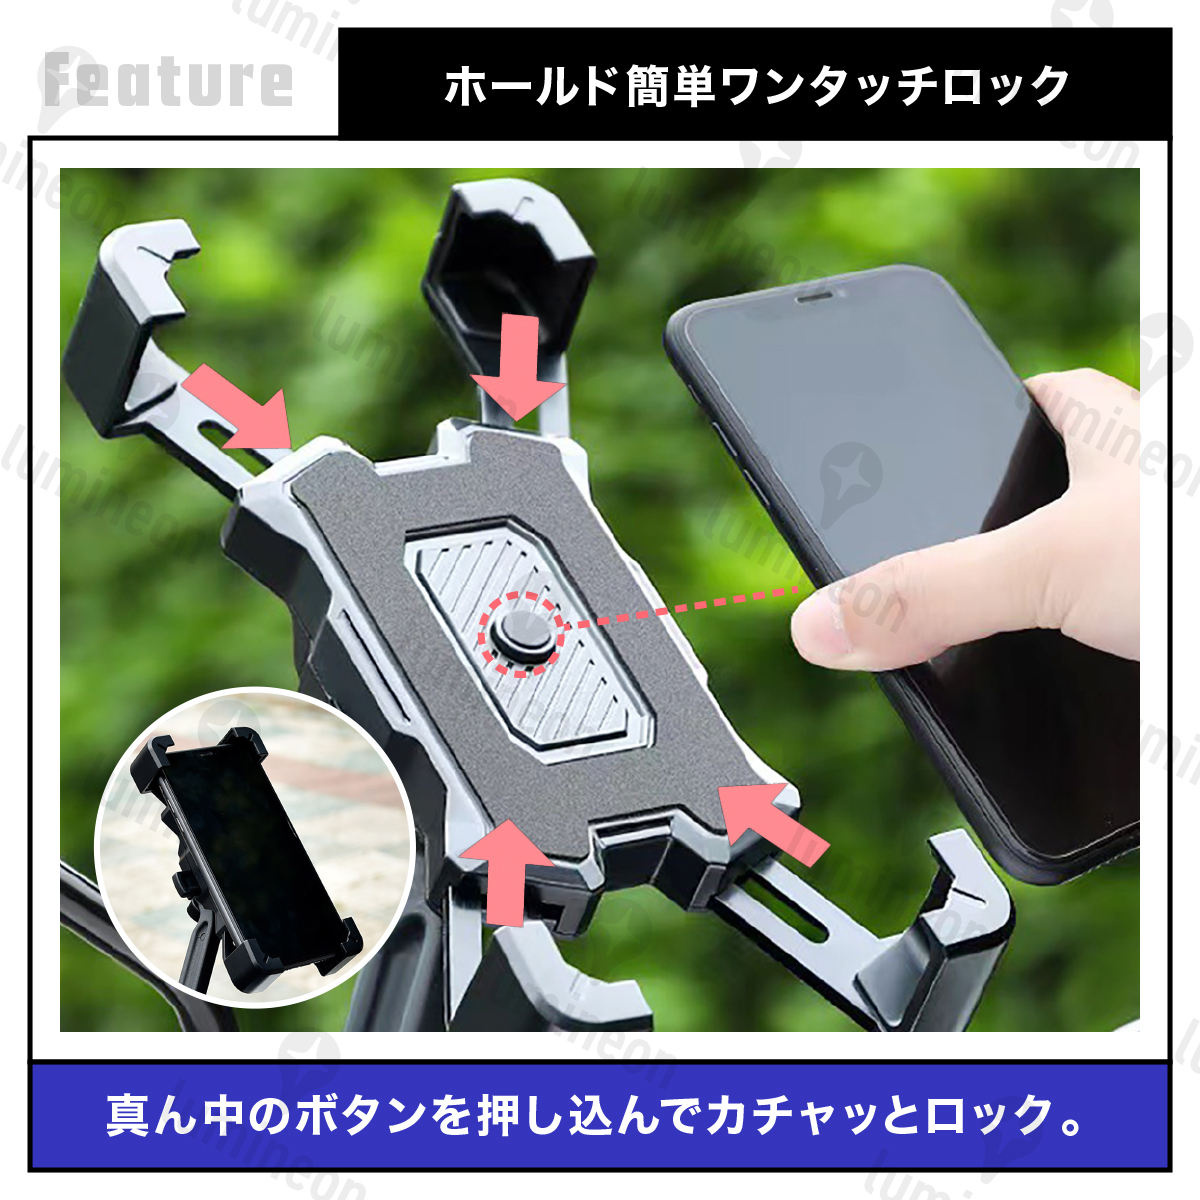 スマホ ホルダー 携帯 バイク用 自転車用 自動ロック 360度 iPhone ナビ 固定 回転 横置き 横向き マウント 挟む おしゃれ g095 1_画像2